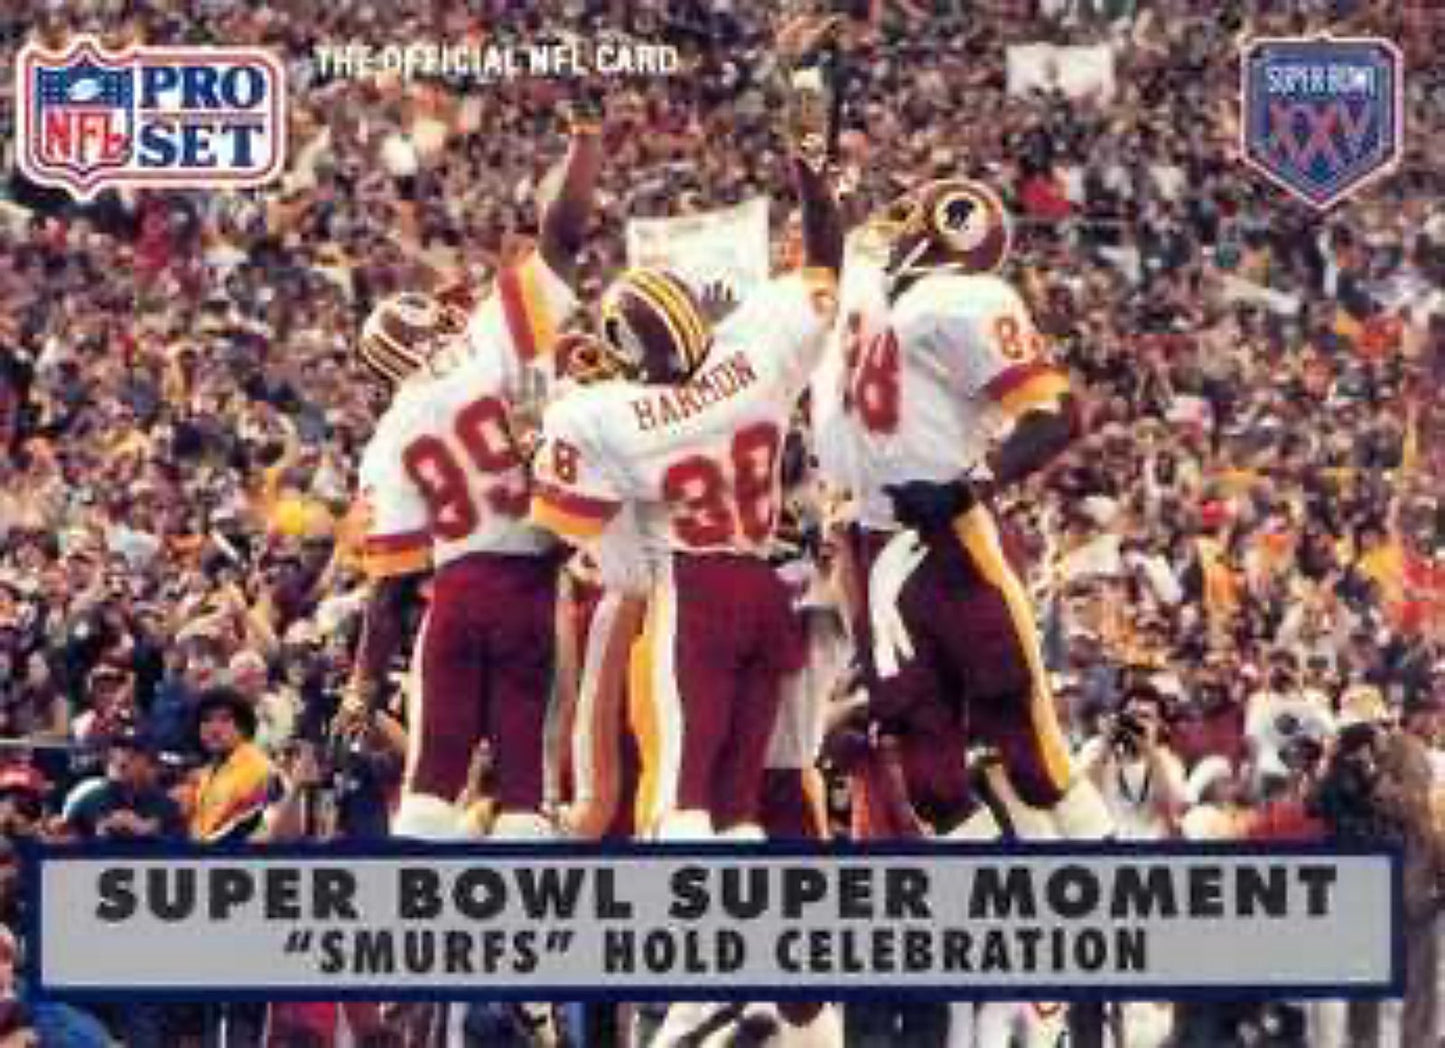 1990-91 Pro Set Super Bowl 160 Football 148 Smurfs (Redskins)